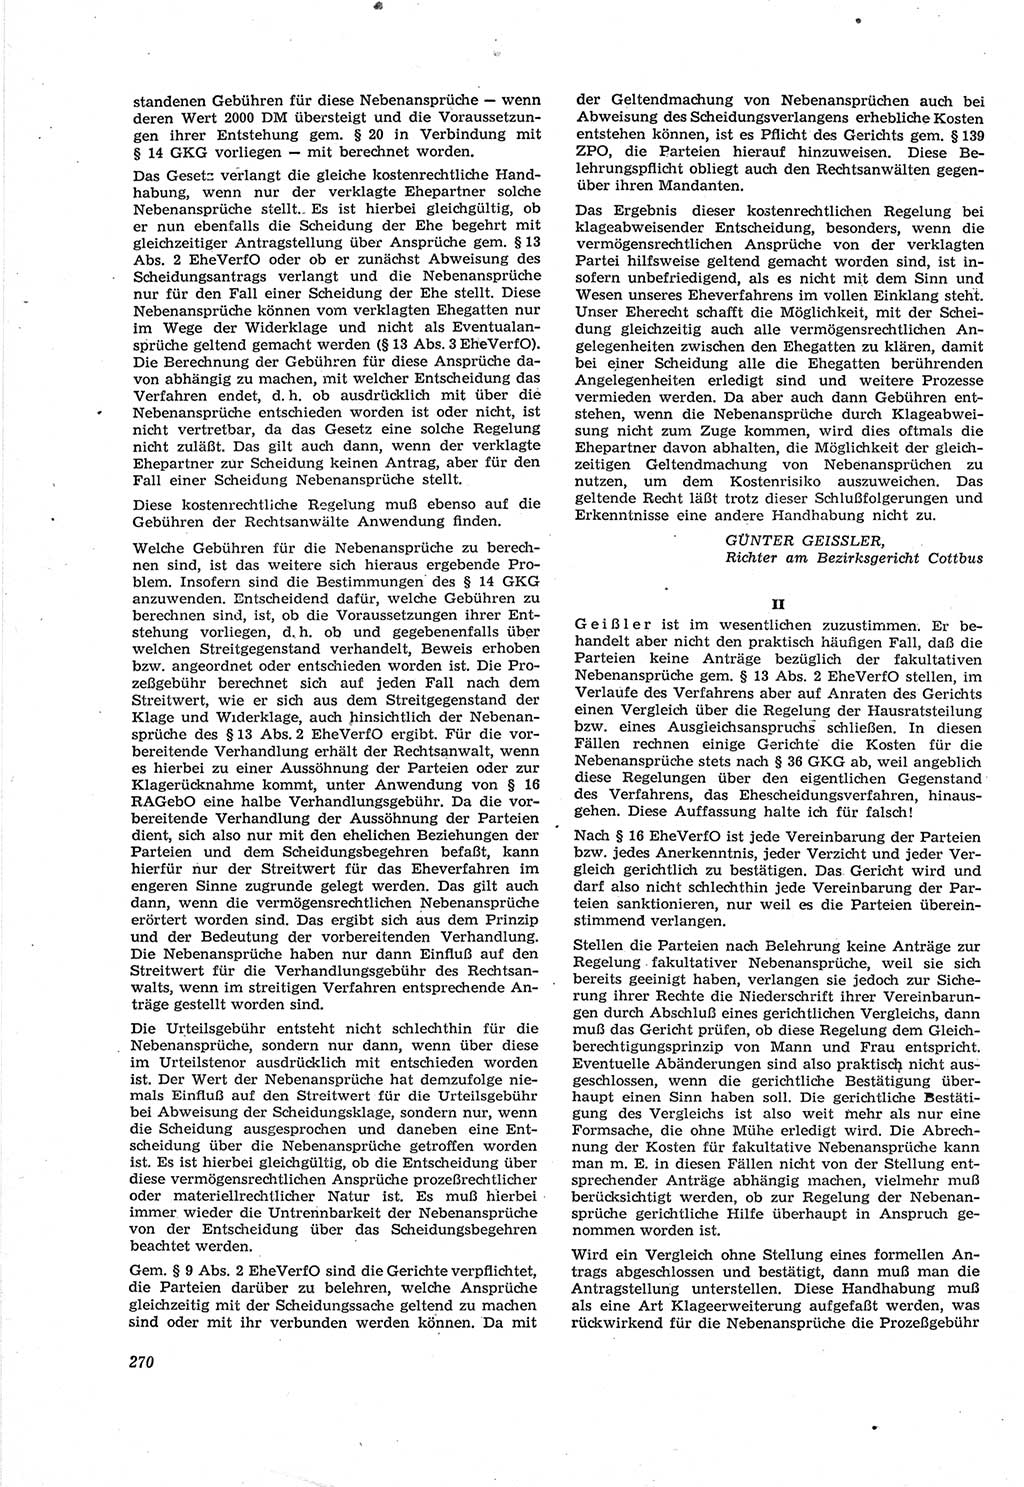 Neue Justiz (NJ), Zeitschrift für Recht und Rechtswissenschaft [Deutsche Demokratische Republik (DDR)], 18. Jahrgang 1964, Seite 270 (NJ DDR 1964, S. 270)